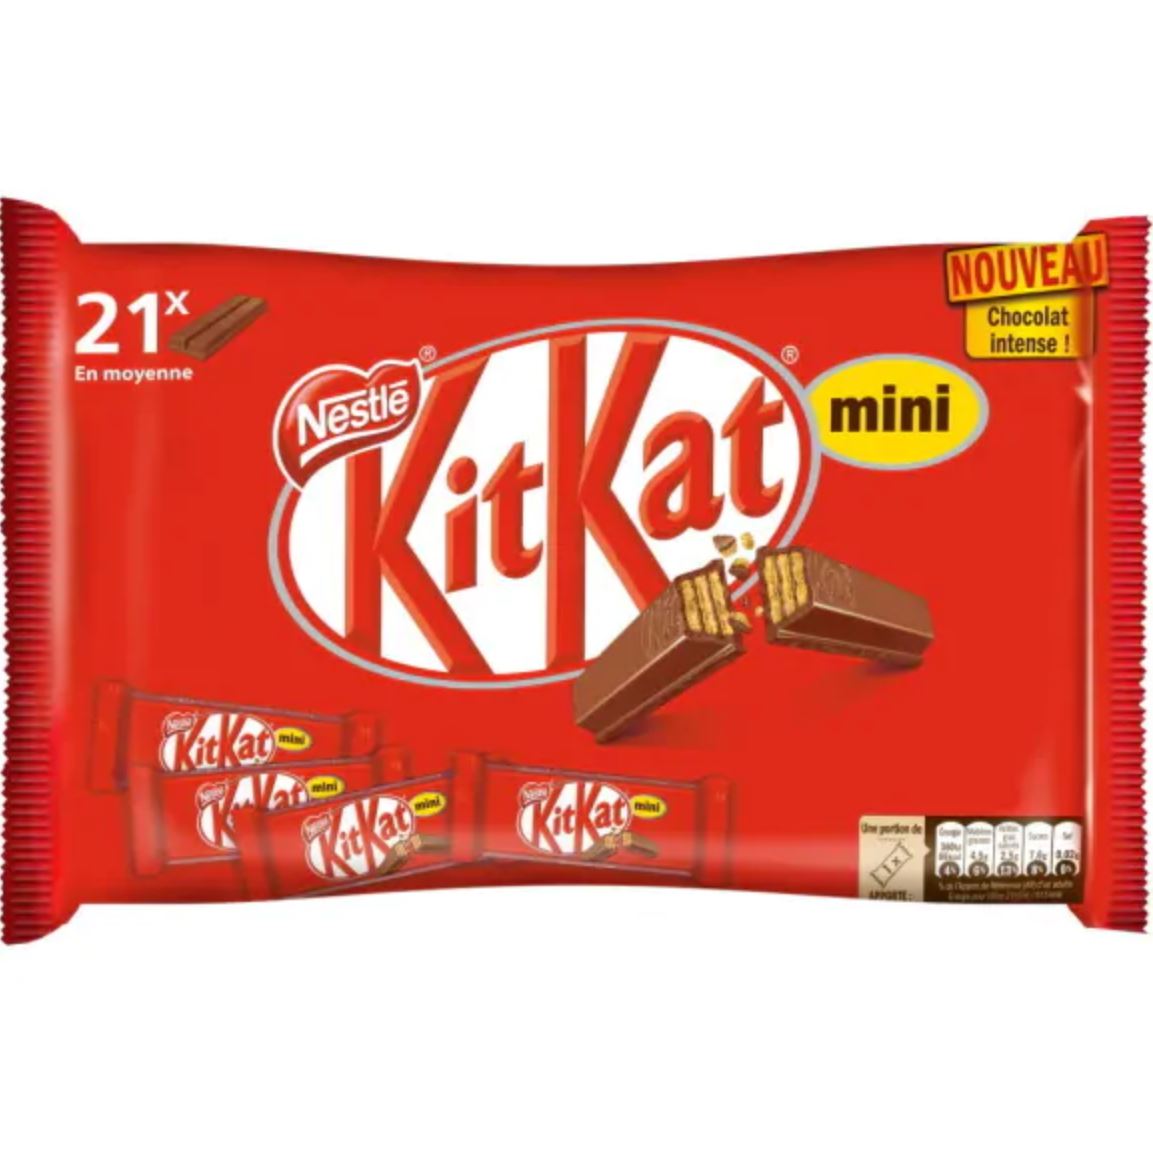 Kit Kat mini